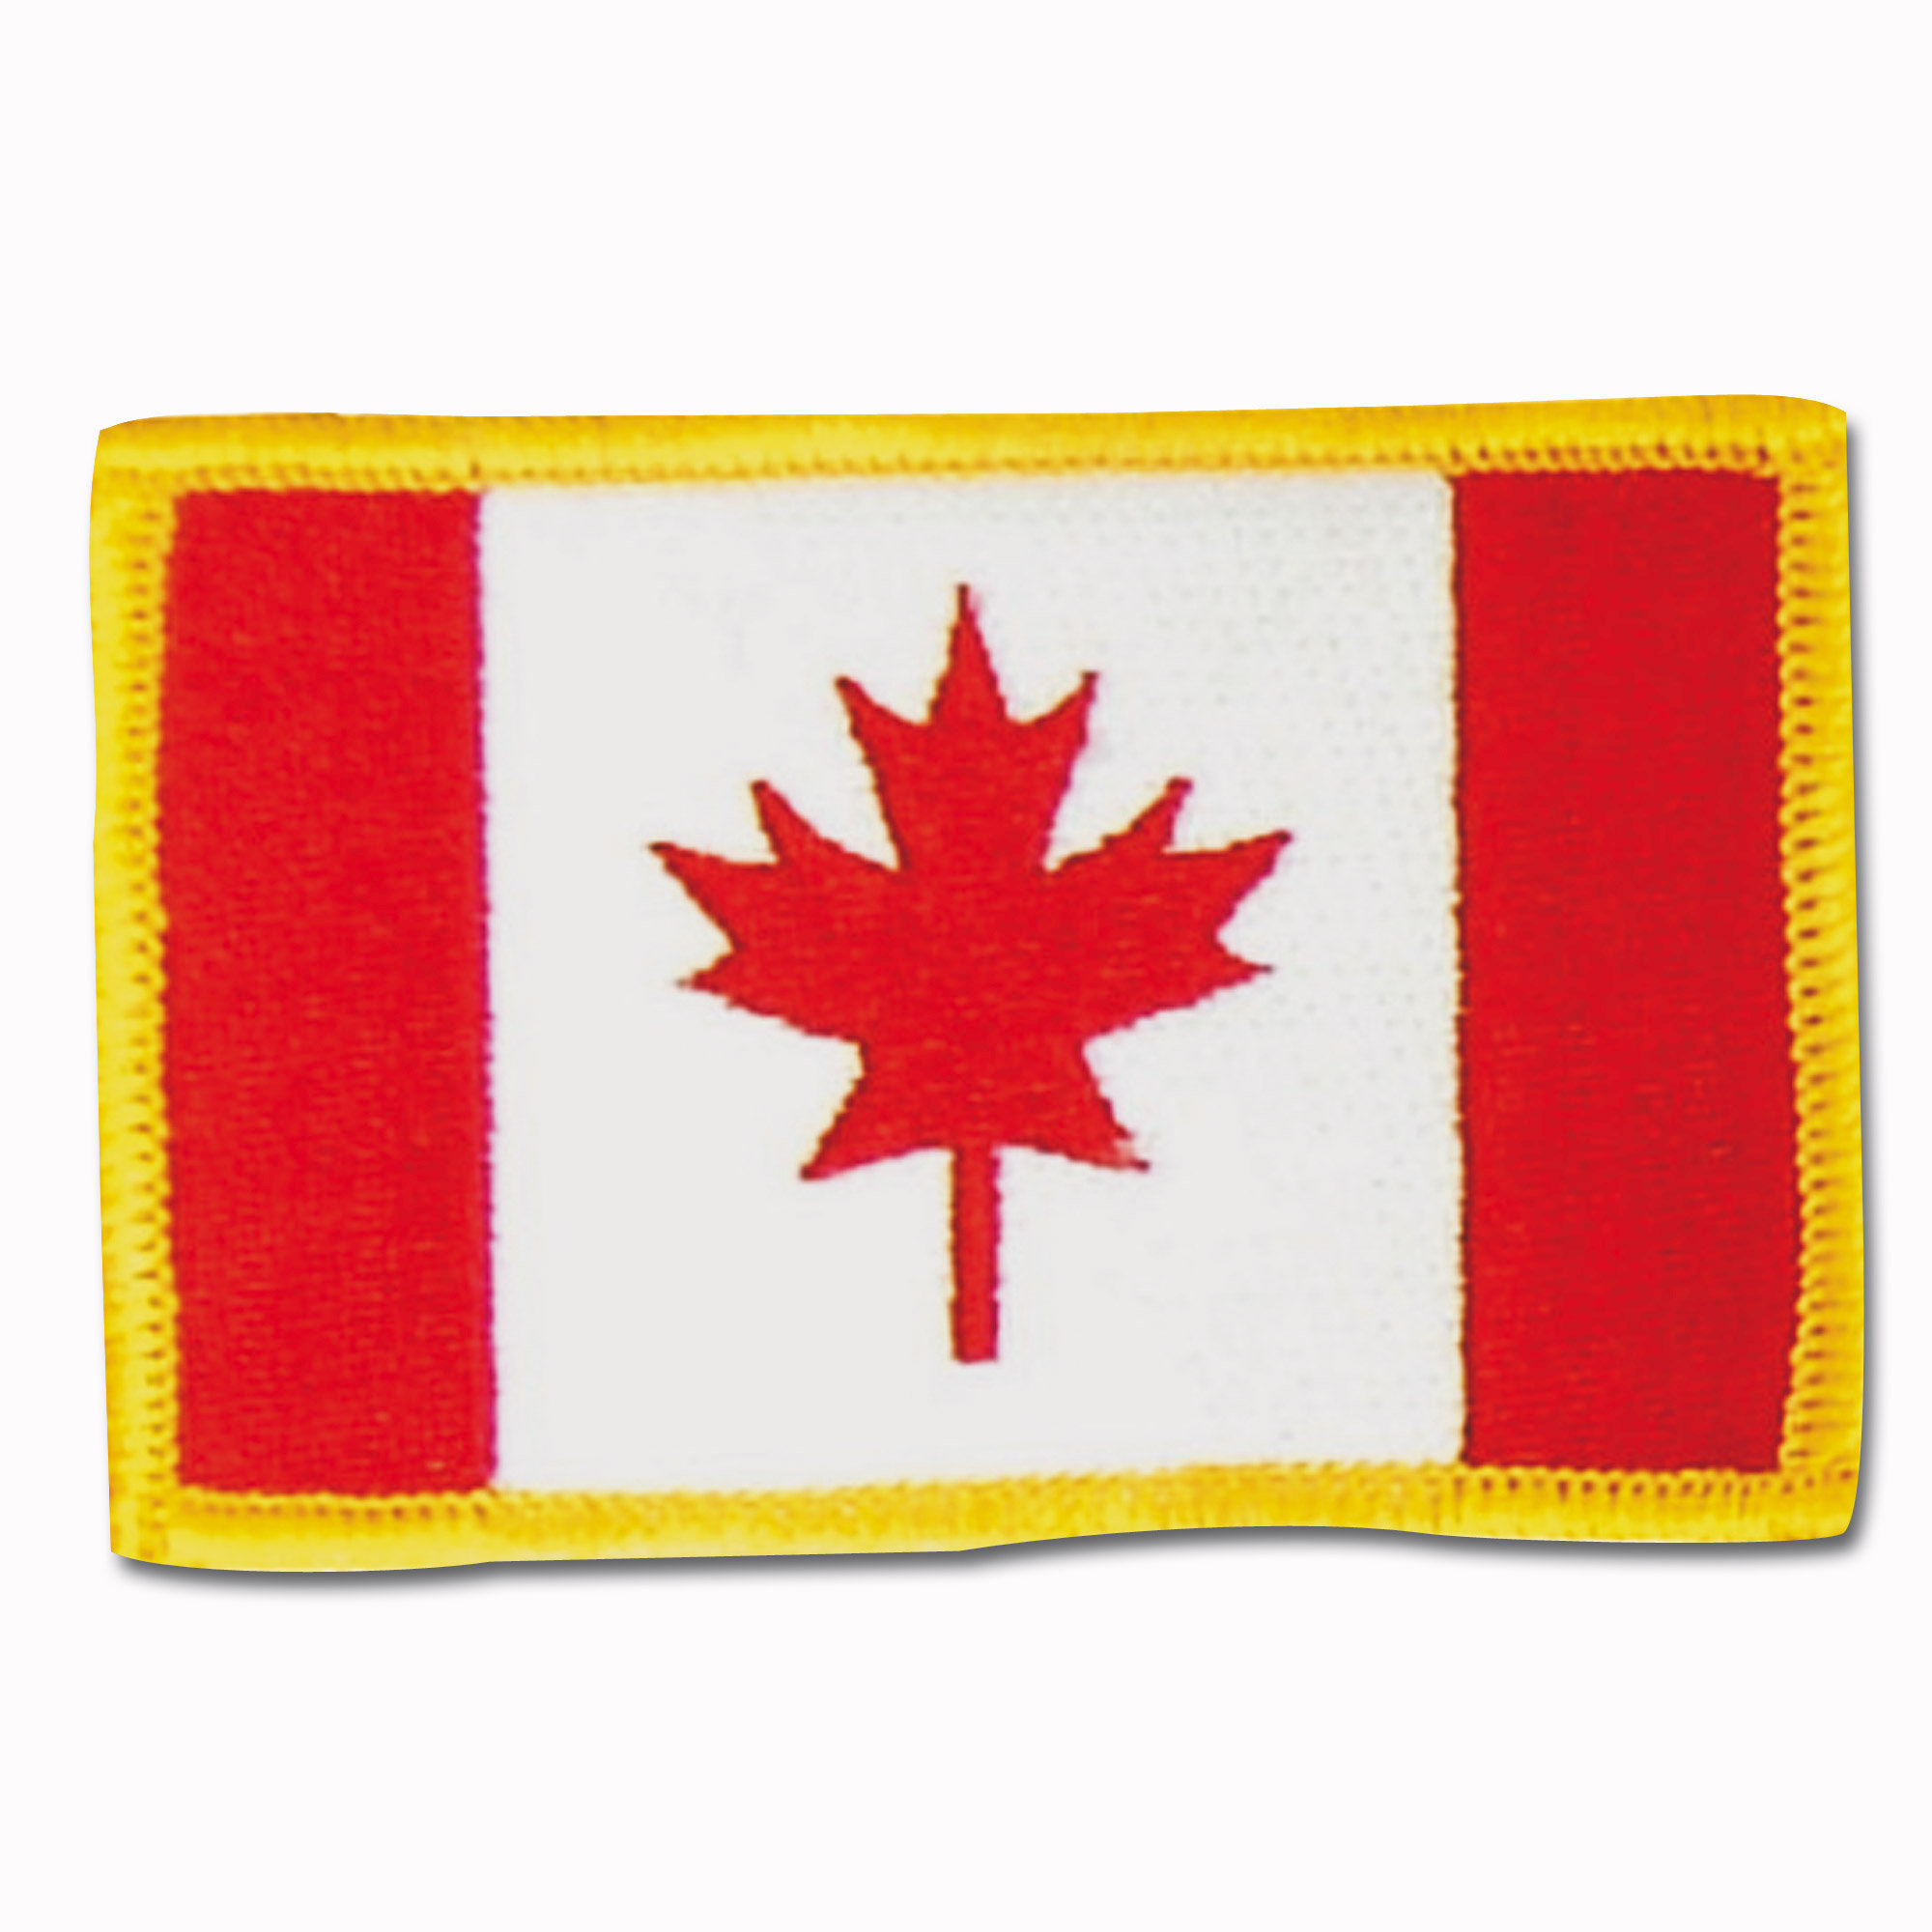 Почему на флаге Канады изображён кленовый лист